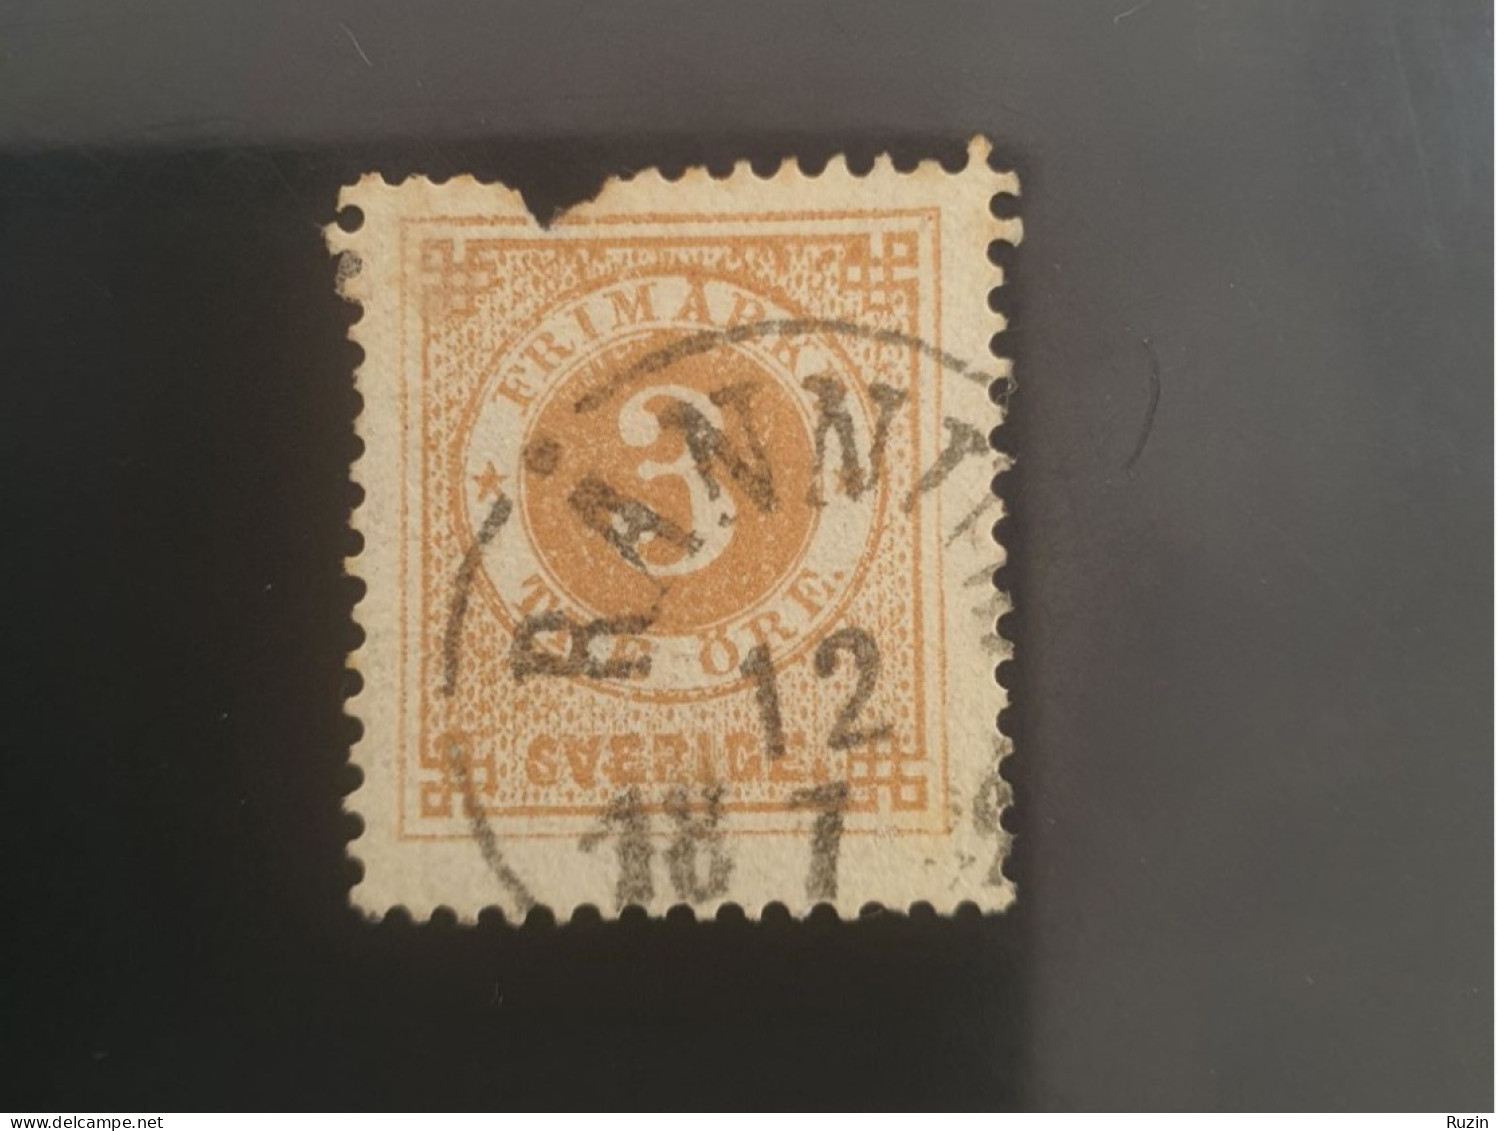 Sweden 1886 Circle Type Stamp 3 öre Yellow Brown - Gebraucht